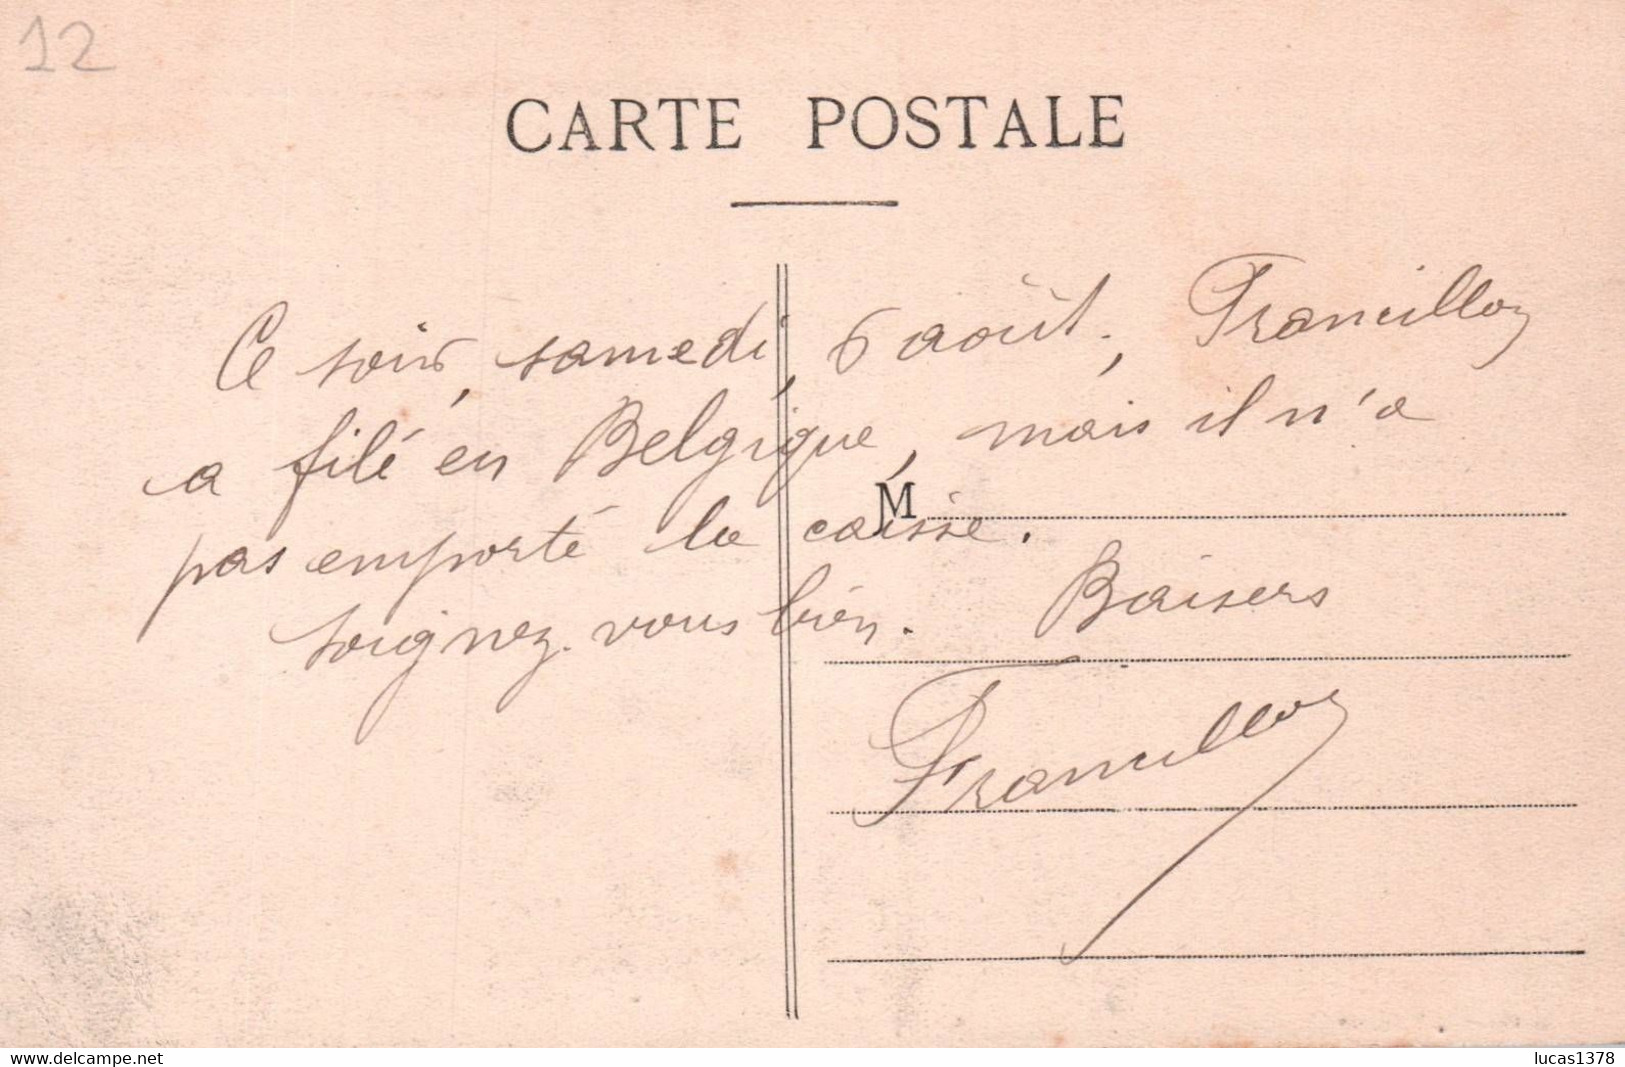 42 / LE CHAMBON FEUGEROLLES / L HOTEL DE VILLE INCENDIE LE 24 AVRIL 1910 - Le Chambon Feugerolles